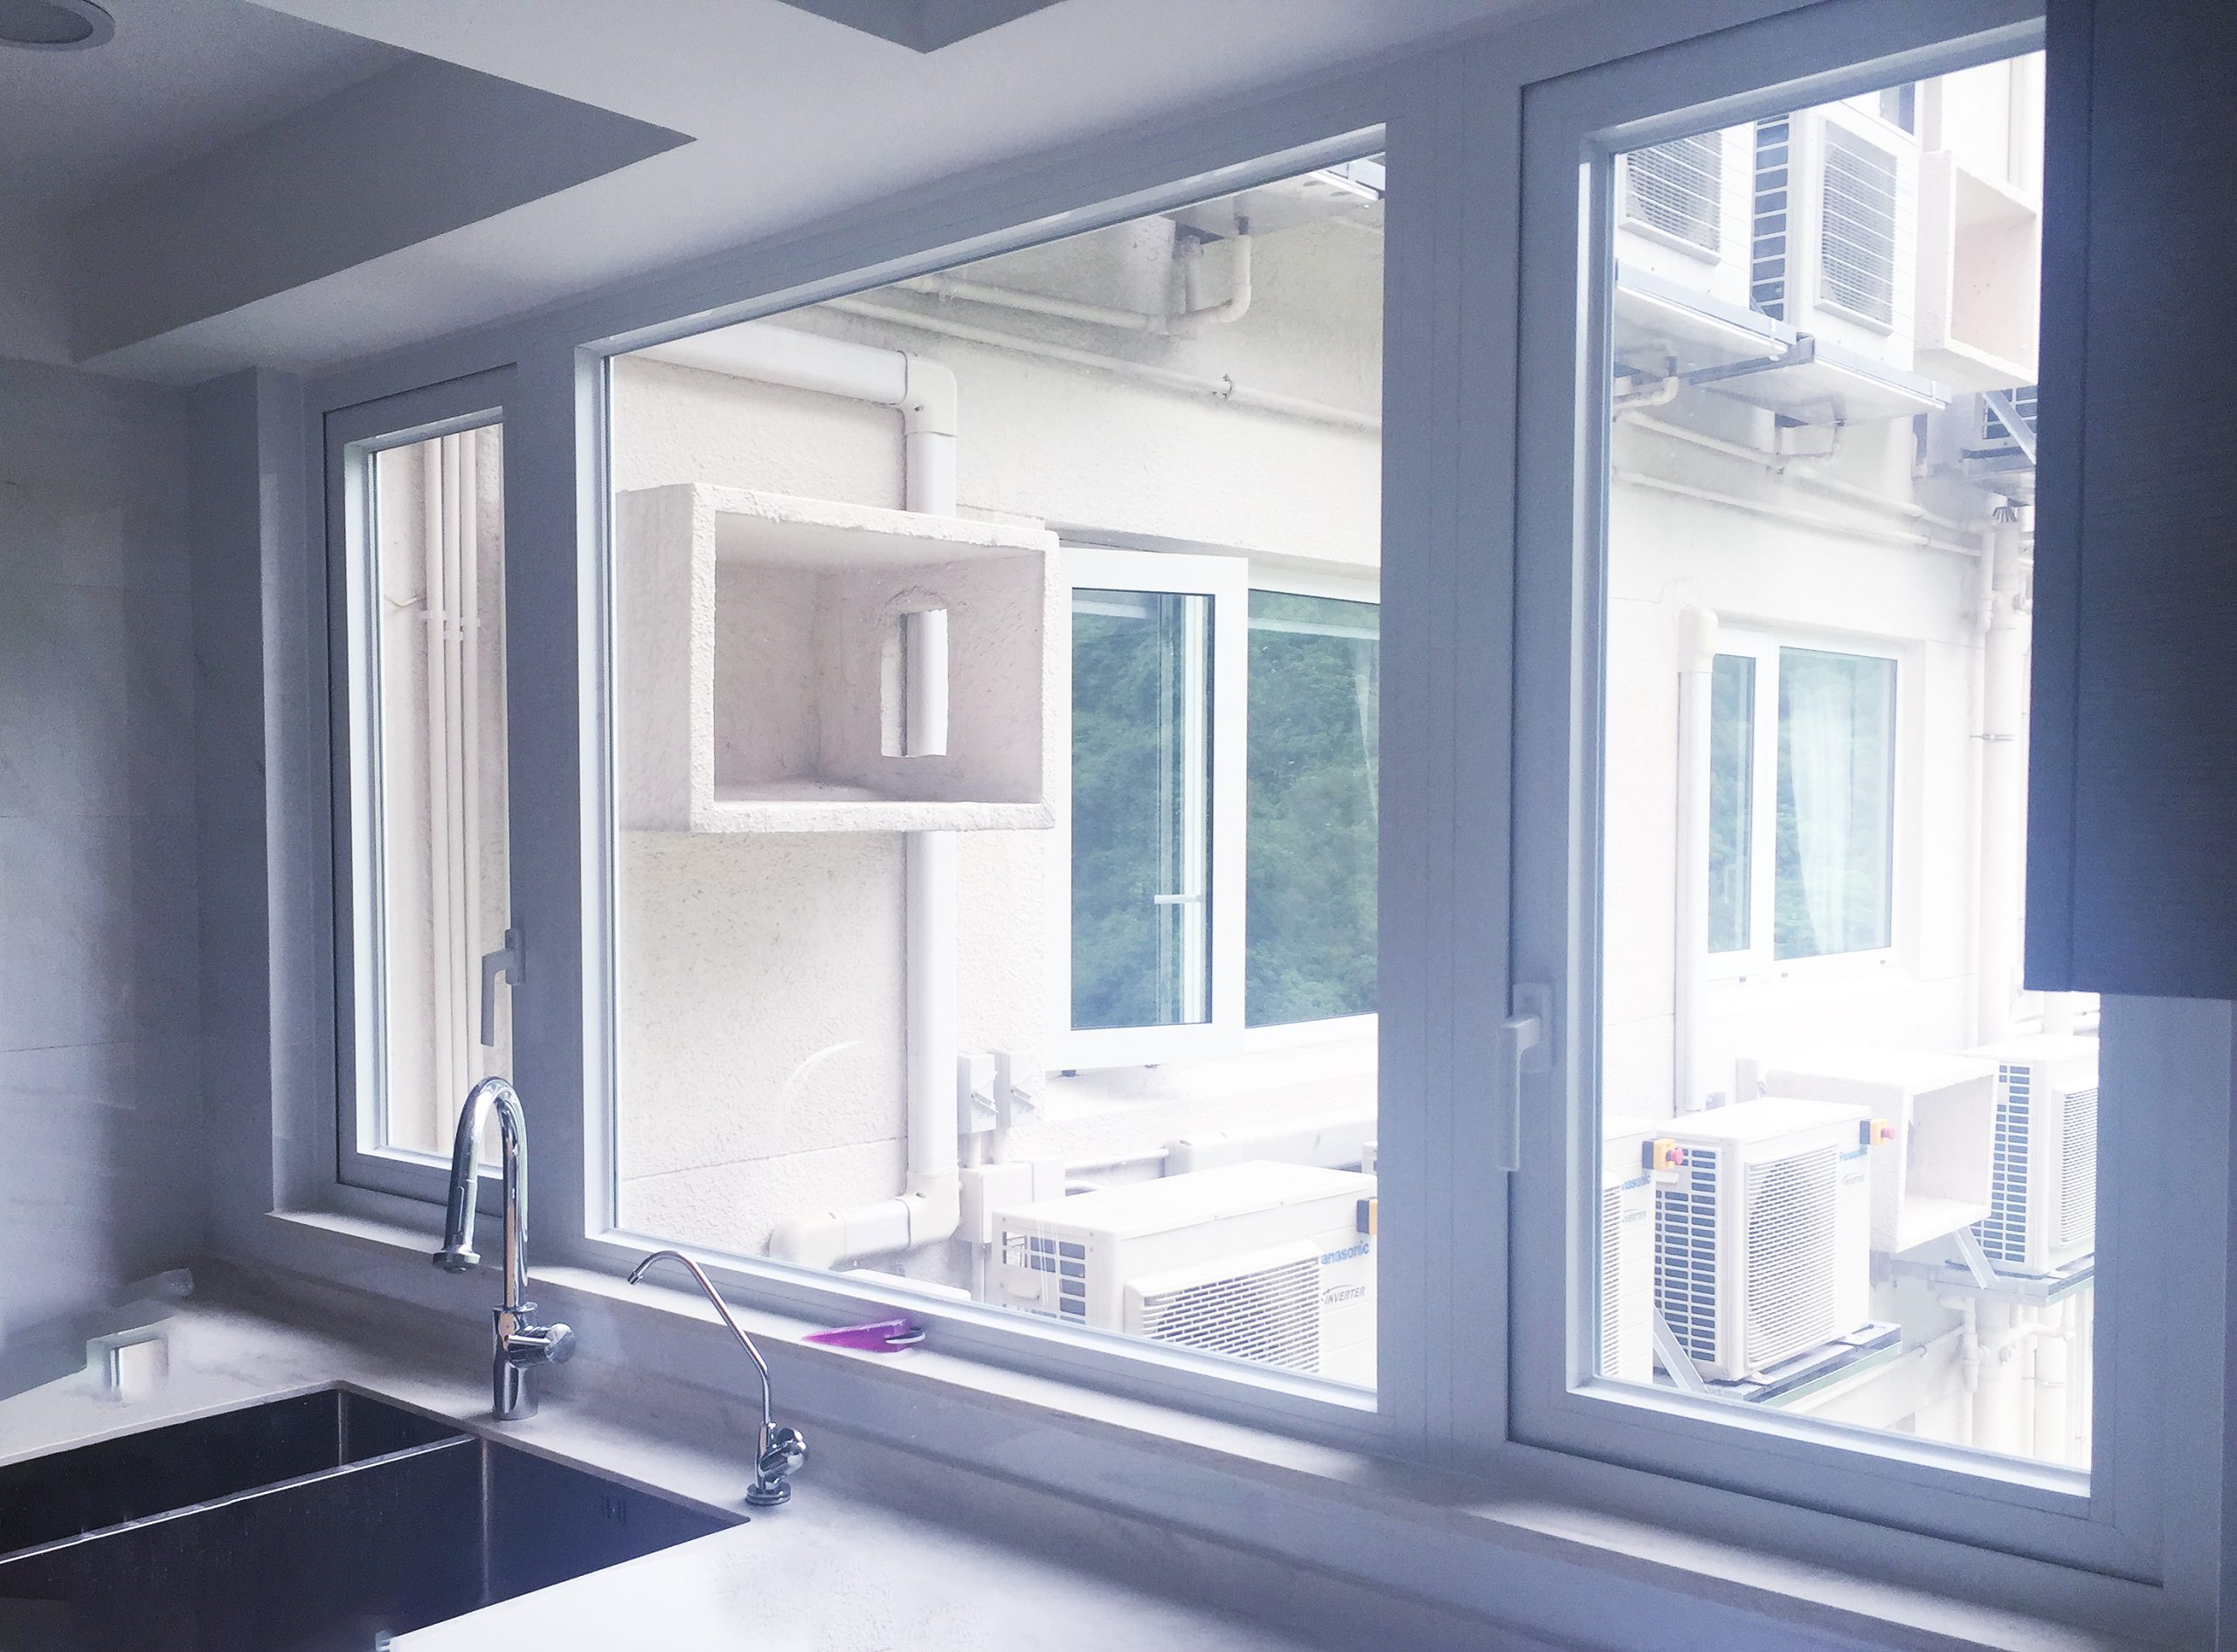 JS - Aluminium Windows in Hong Kong 香港優質鋁窗公司 – Aliplast - Po Shan Mansion寶城大廈